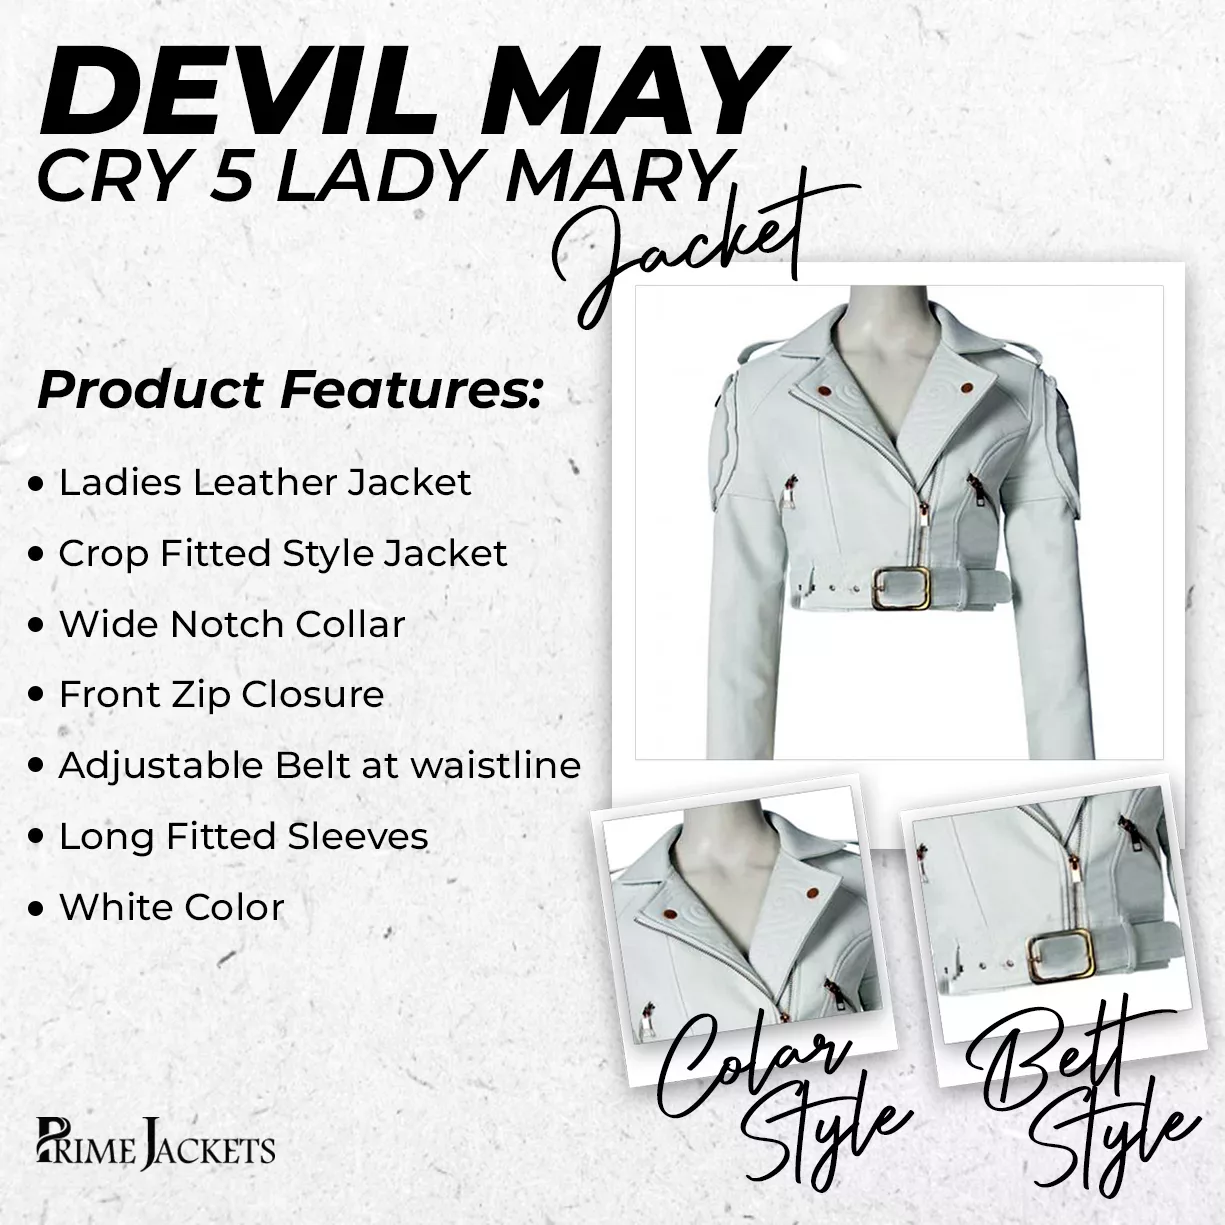 Devil May Cry 5 Lady Mary Jacket